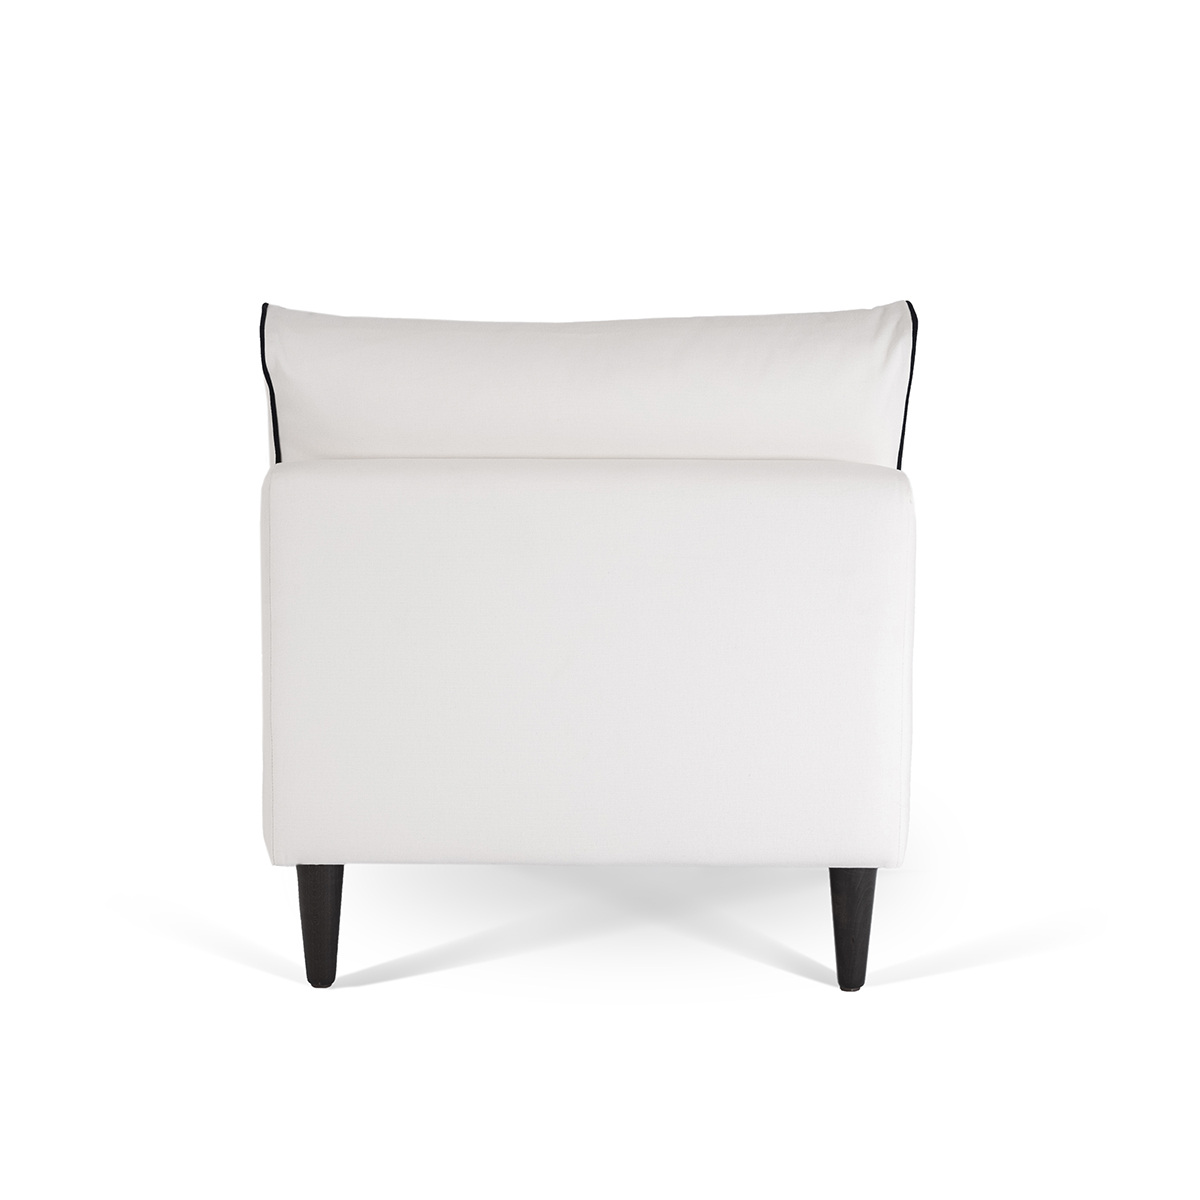 Flip Chair Noa, White / Black - H80 x W80 x D75 cm - Cotton / Wood - image 5